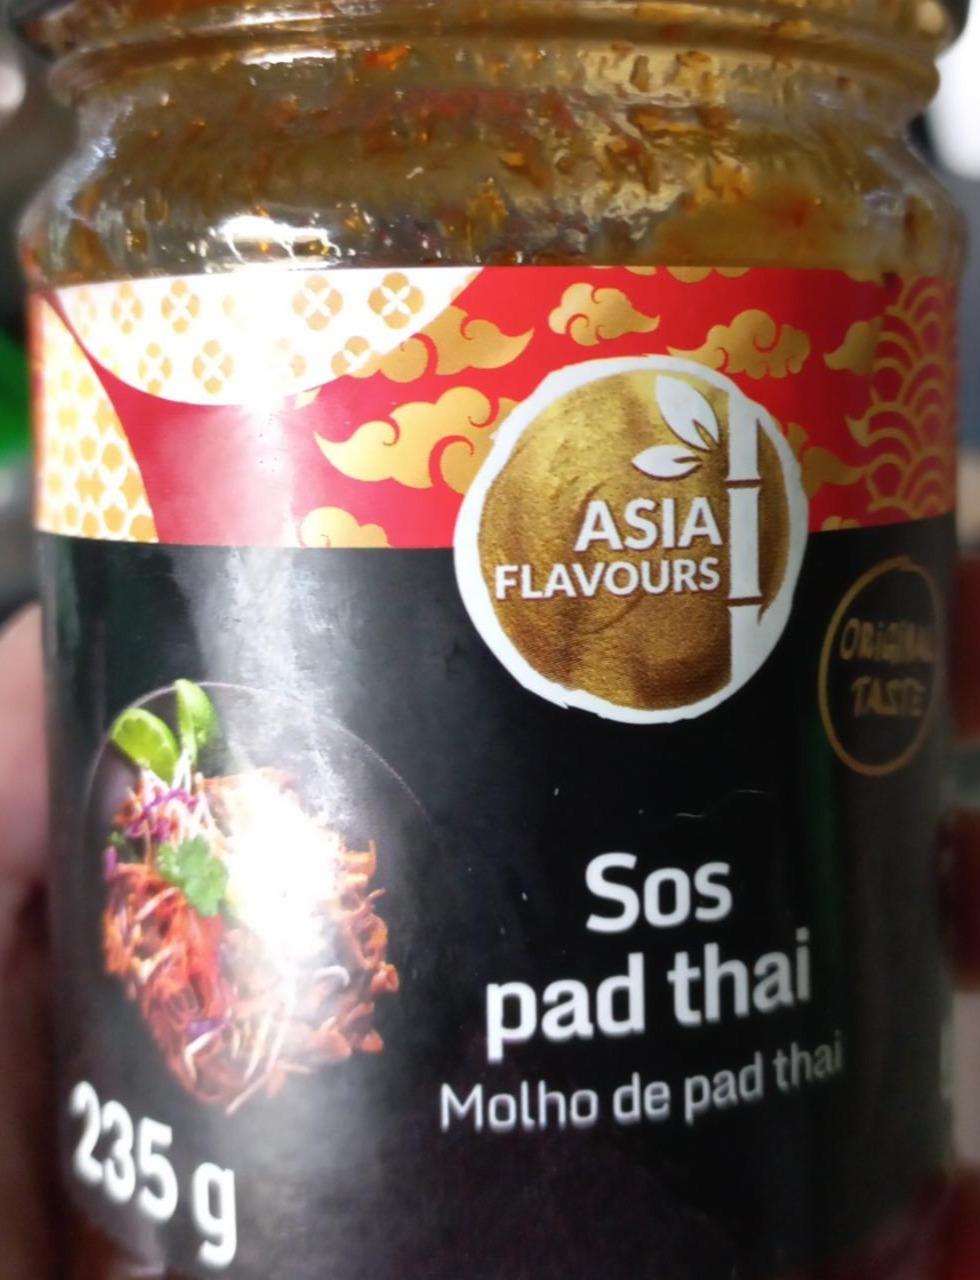 Fotografie - Sos pad thai Asia Flavours